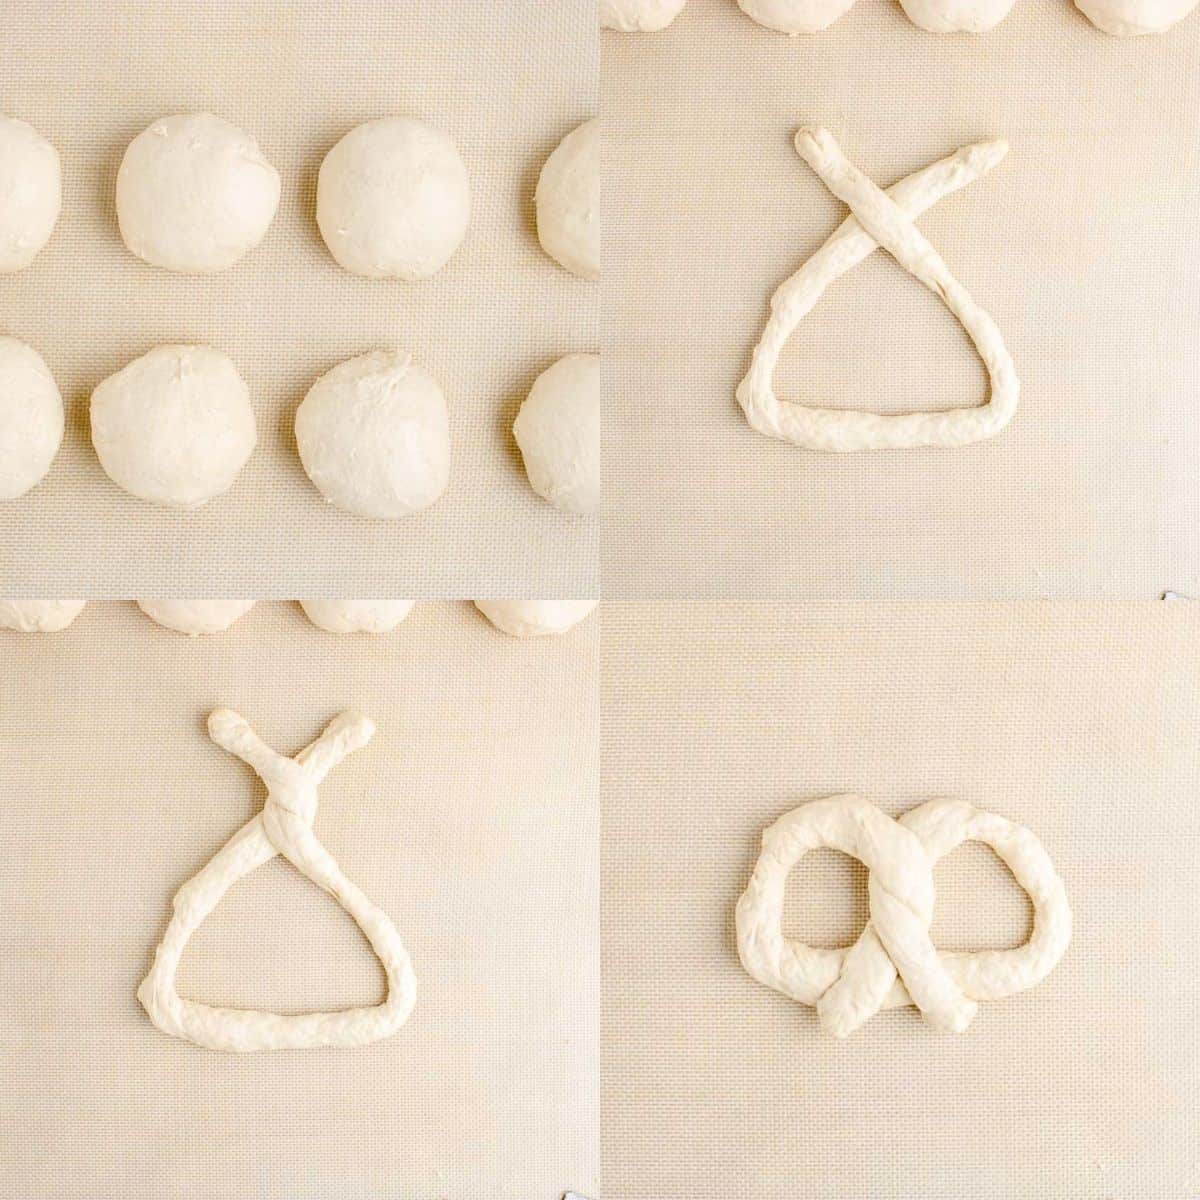 photo tutorial how to form pretzel twist